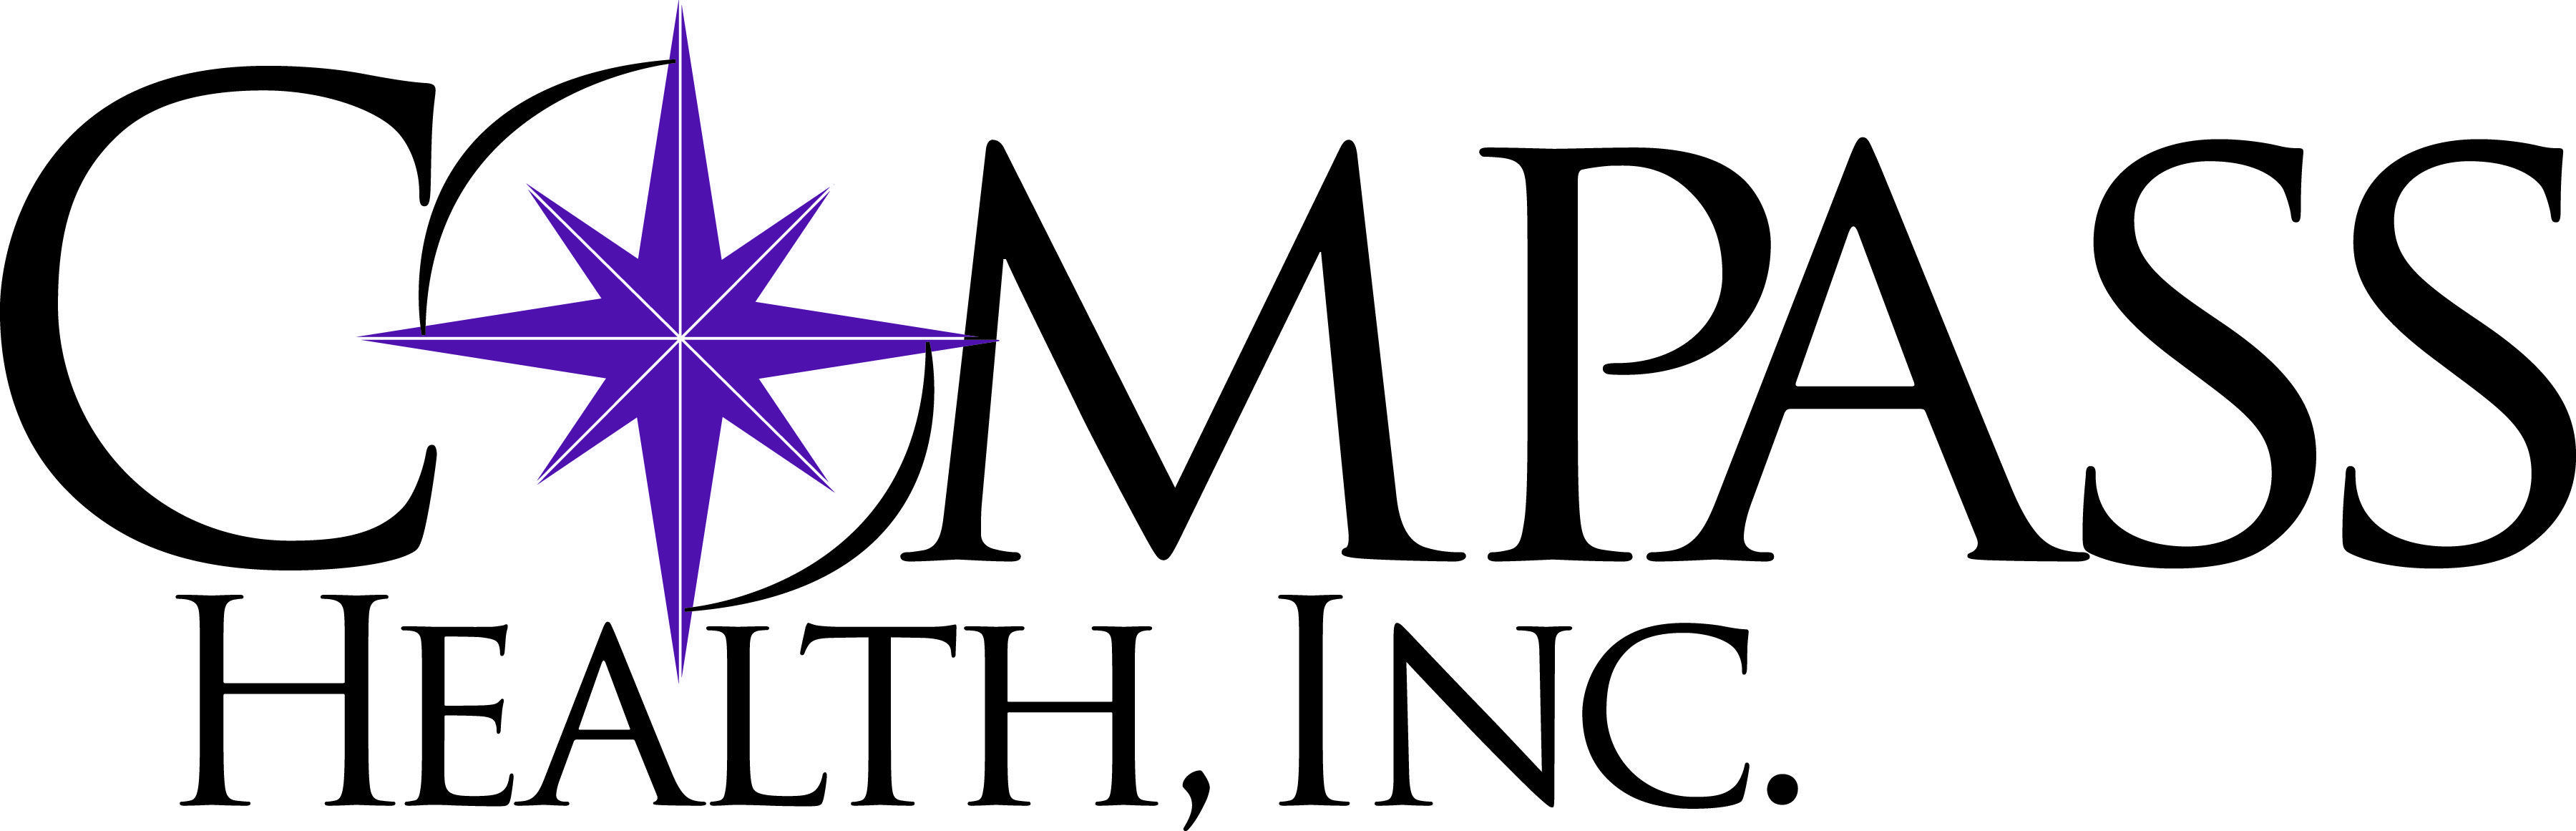 Compass Health Logo - Trade & Media